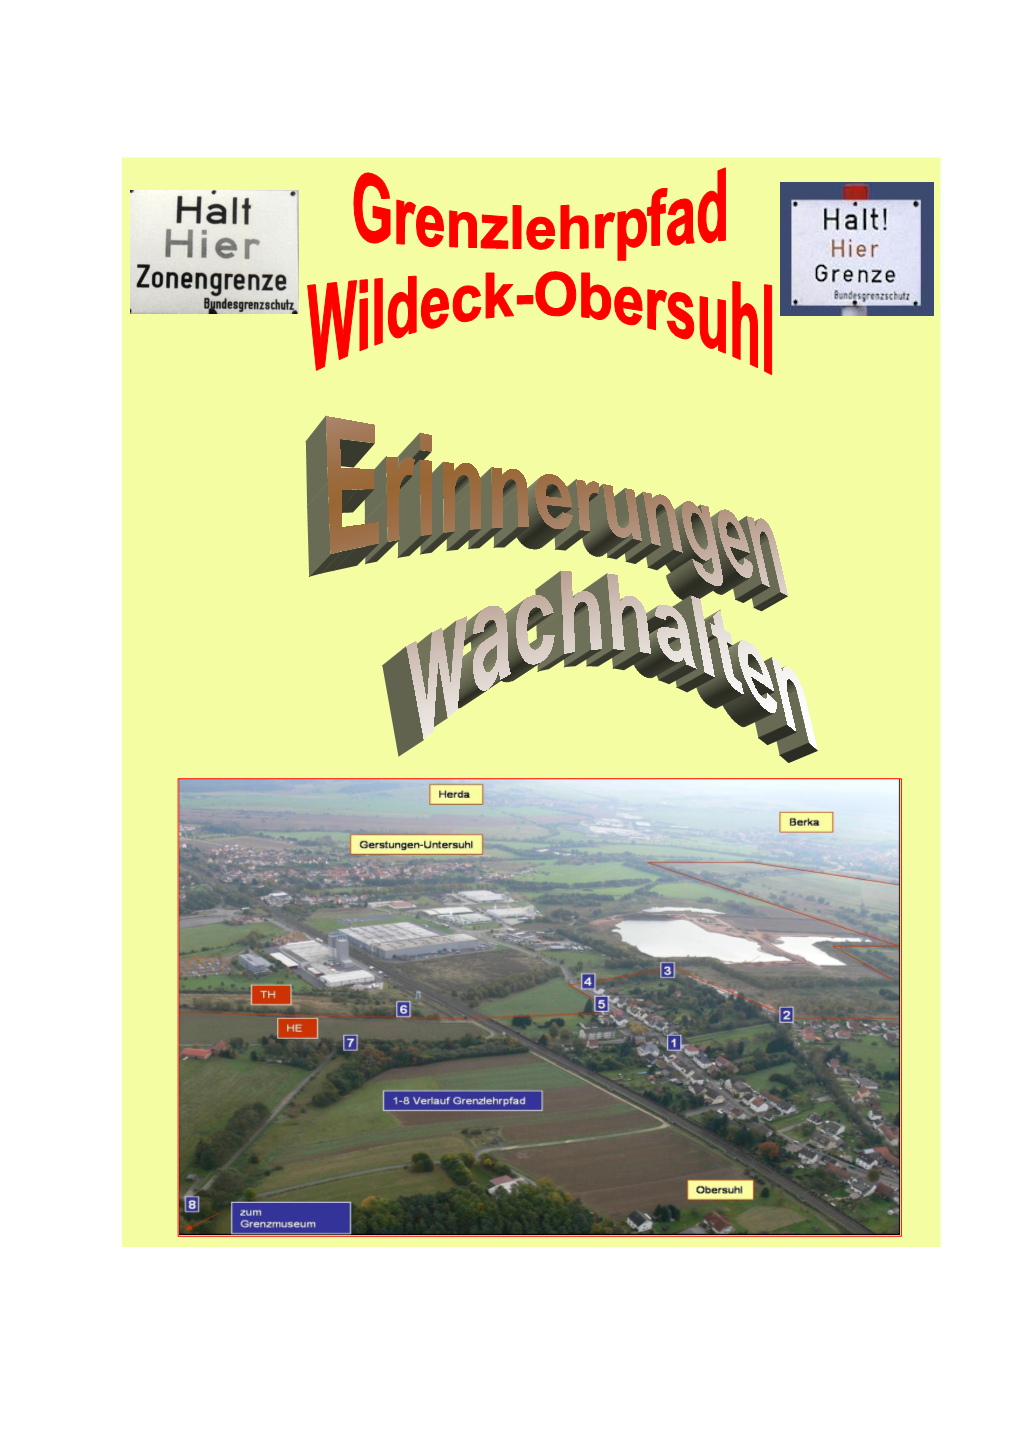 Der Grenzlehrpfad in Wildeck-Obersuhl